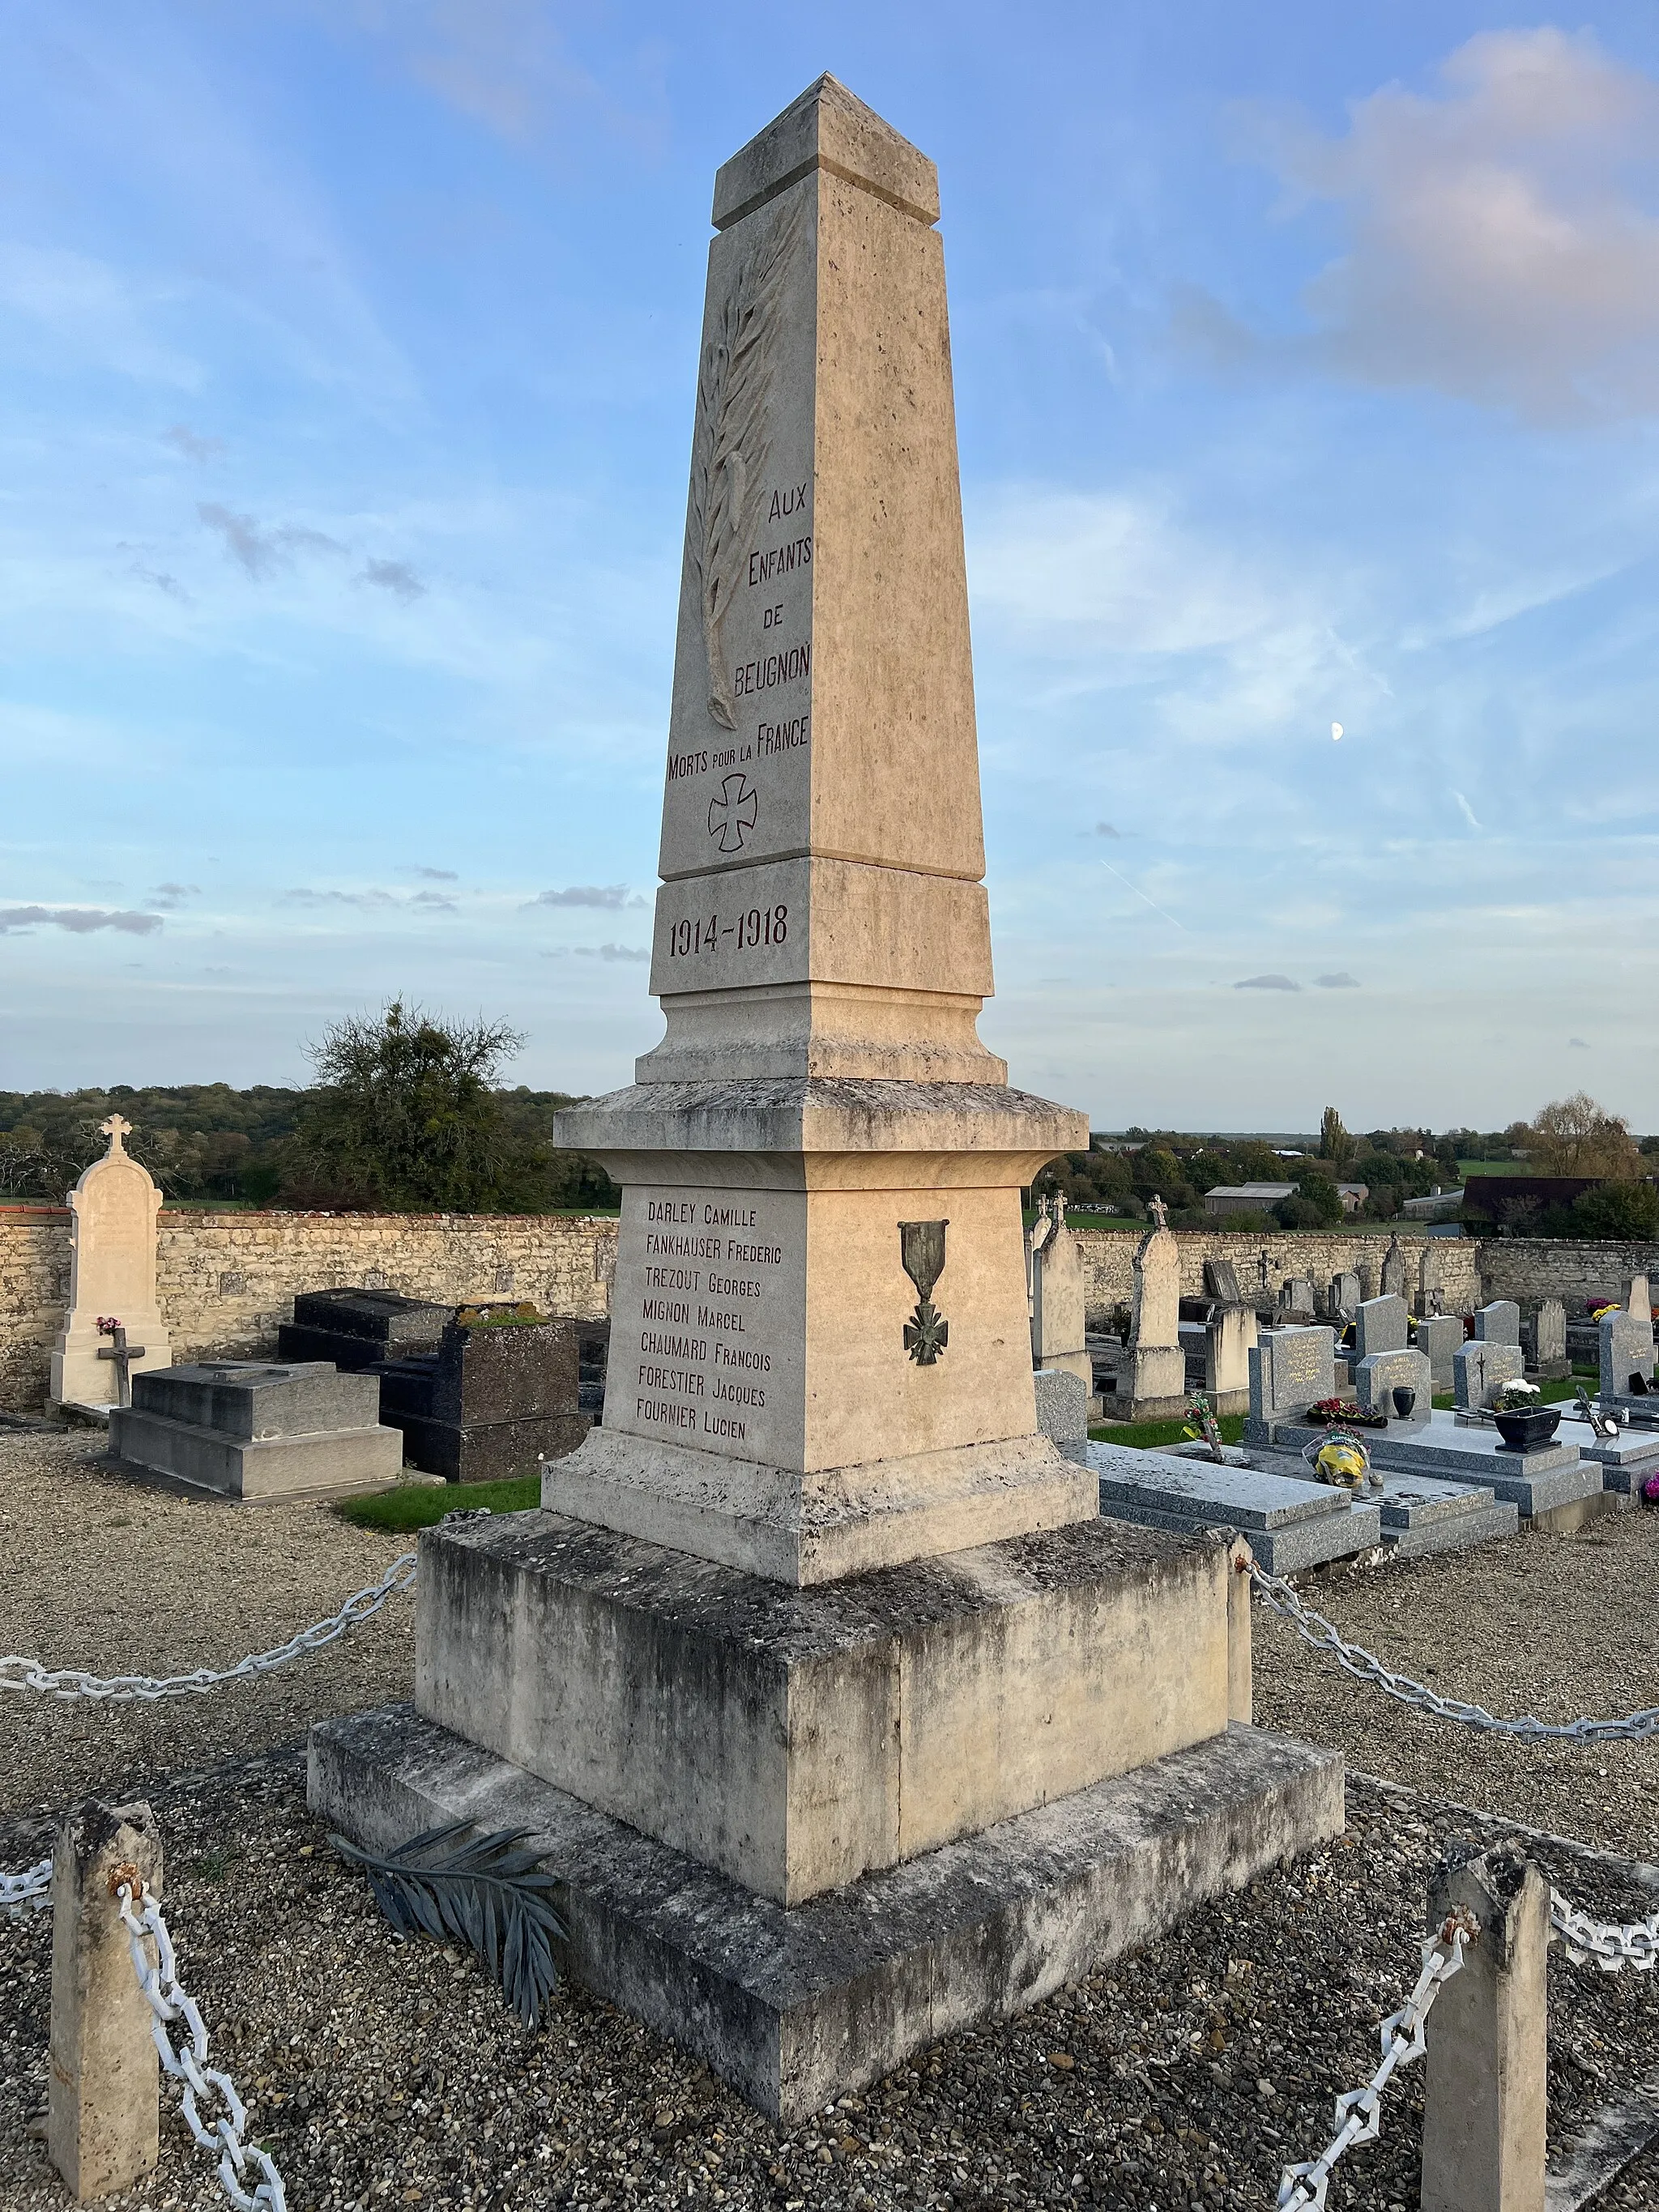 Photo showing: Monument aux morts de Beugnon.